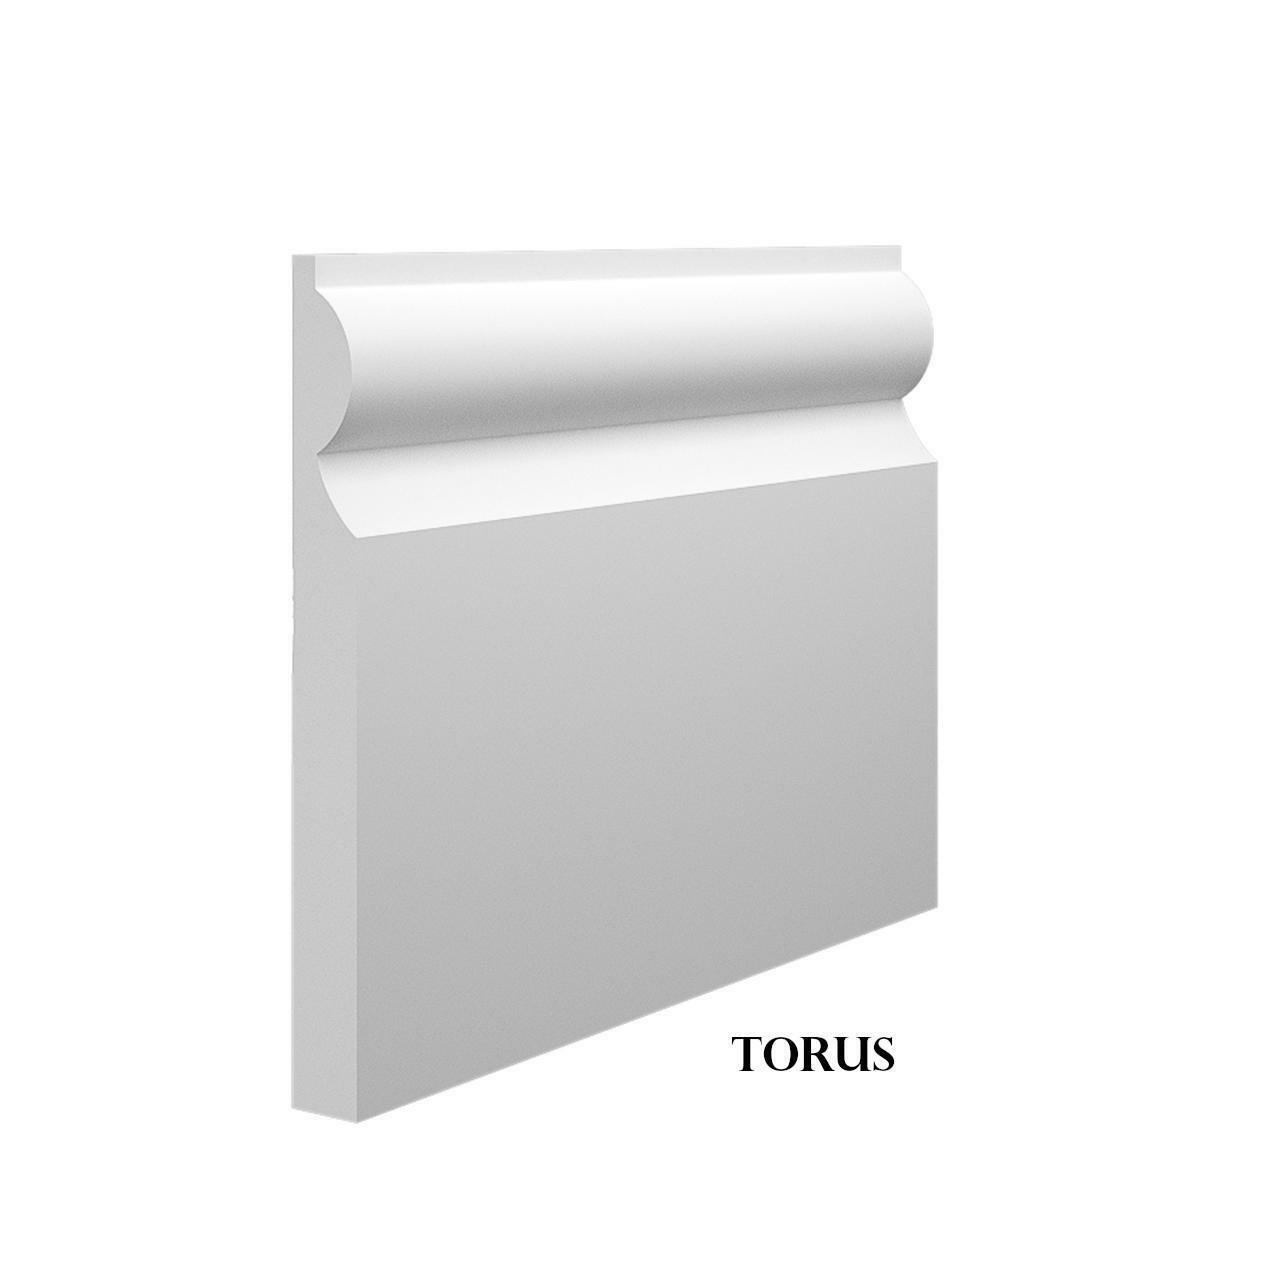 Torus - White Primed MDF Skirting & Architrave